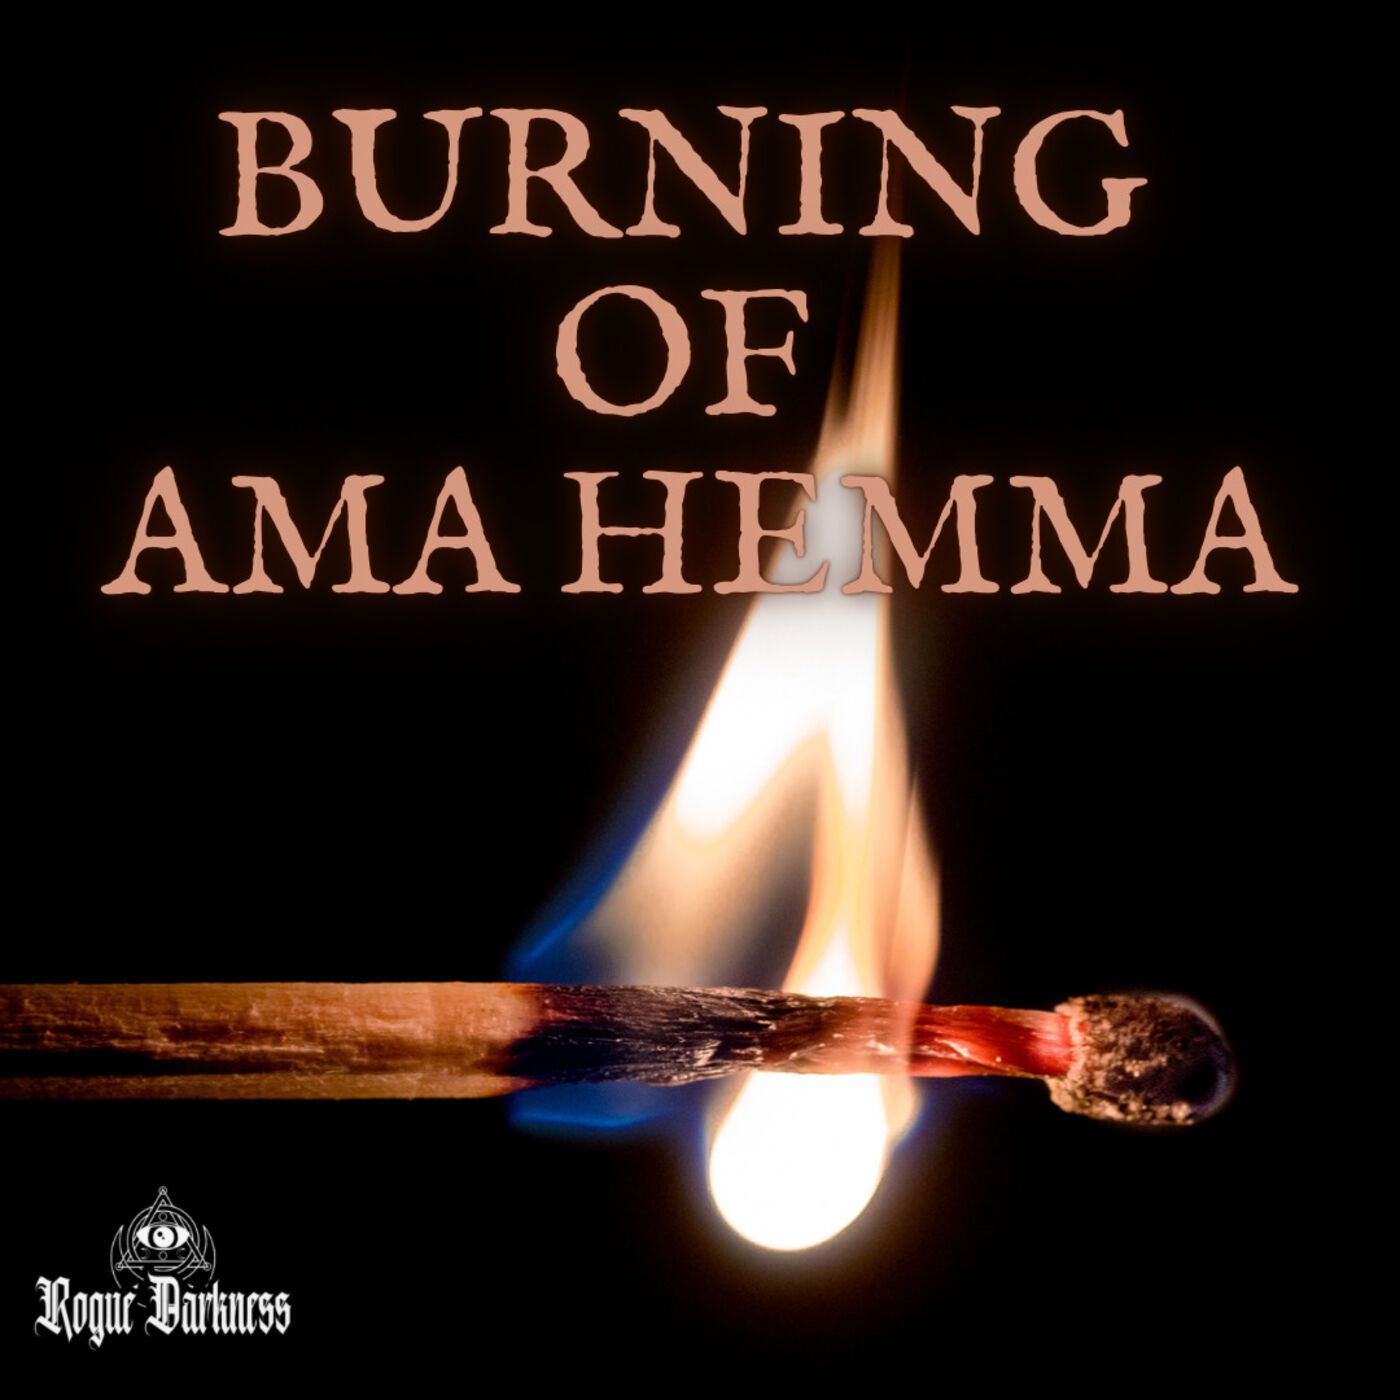 XVI: The Burning of Ama Hemma